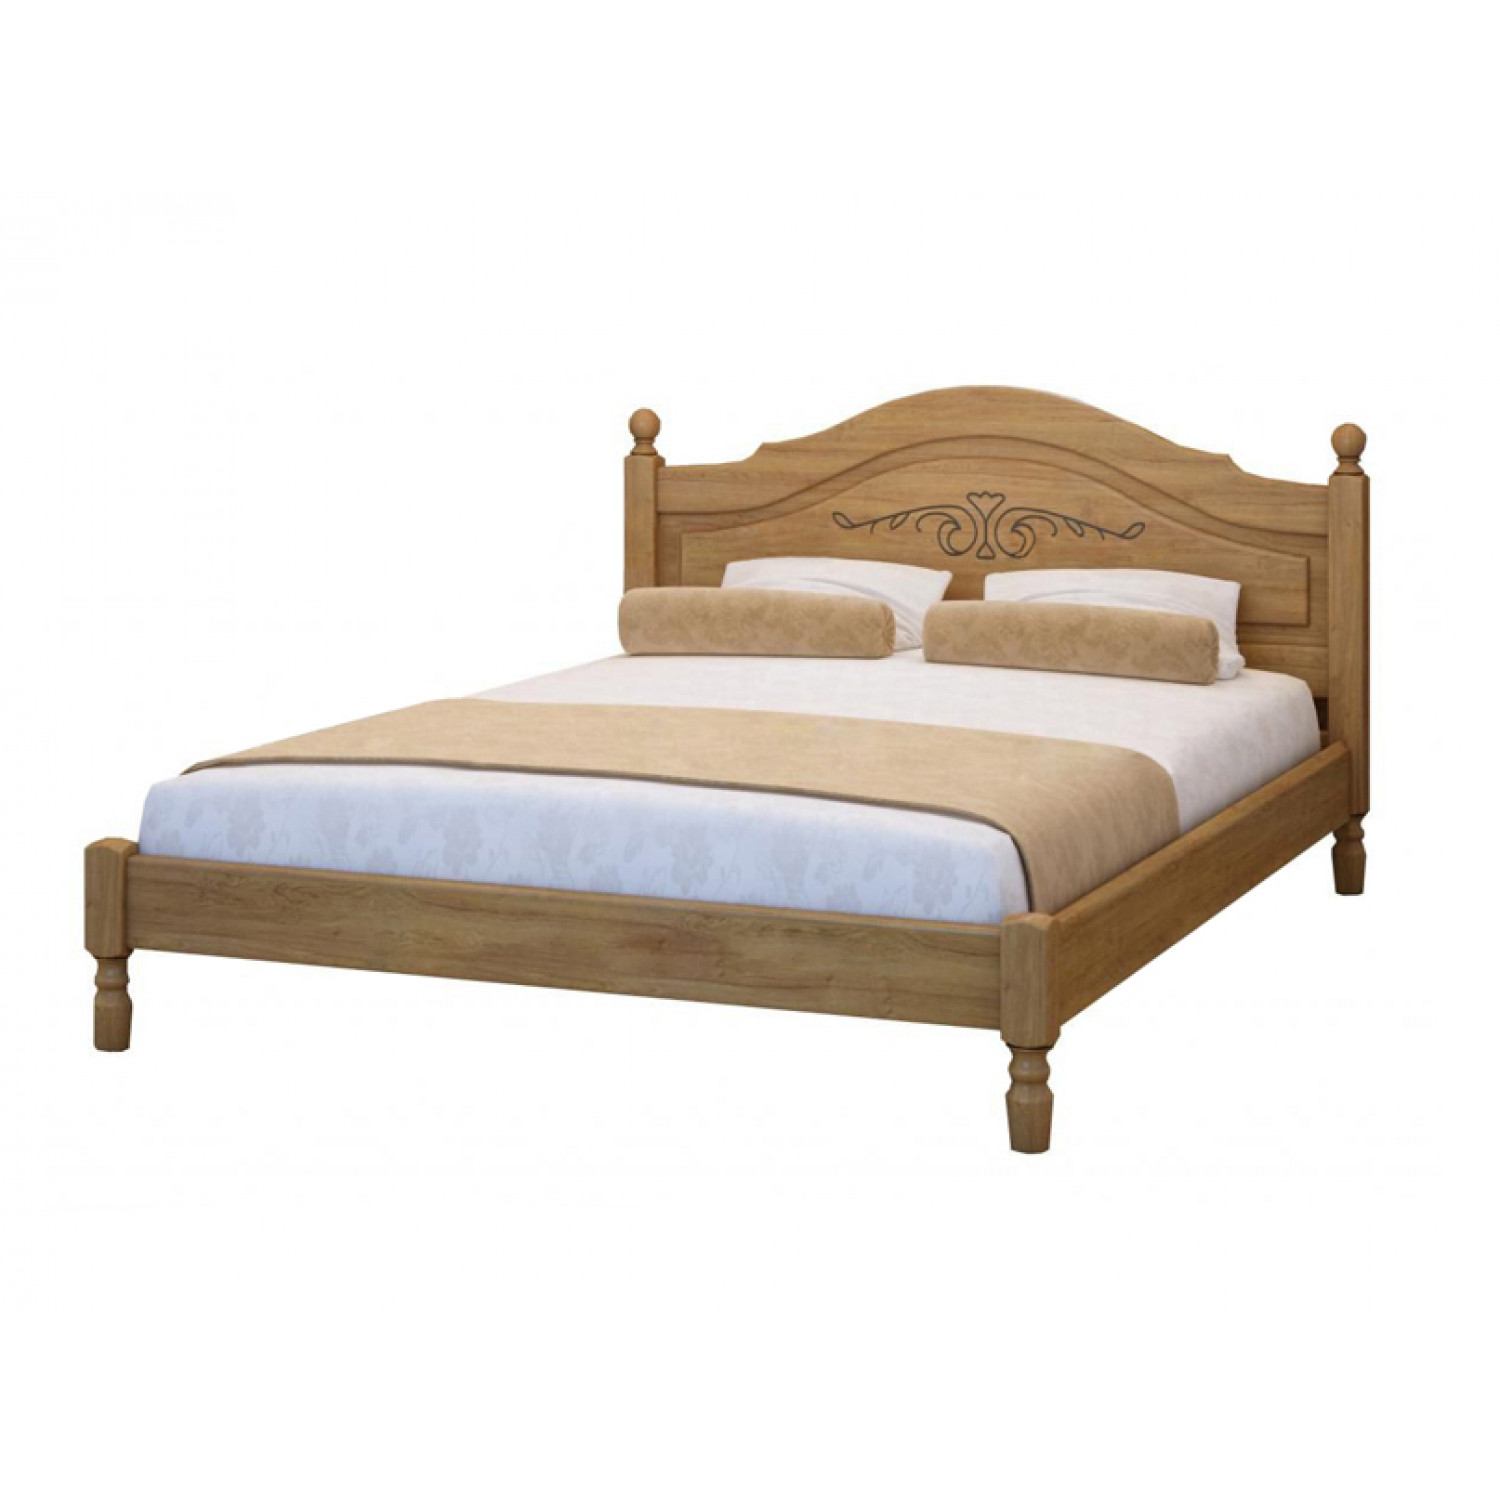 Купить деревянную кровать недорого. Кровать Точенка Муром. Кровать Точенка из сосны. Кровать Точенка 2. Кровать Точенка из массива.